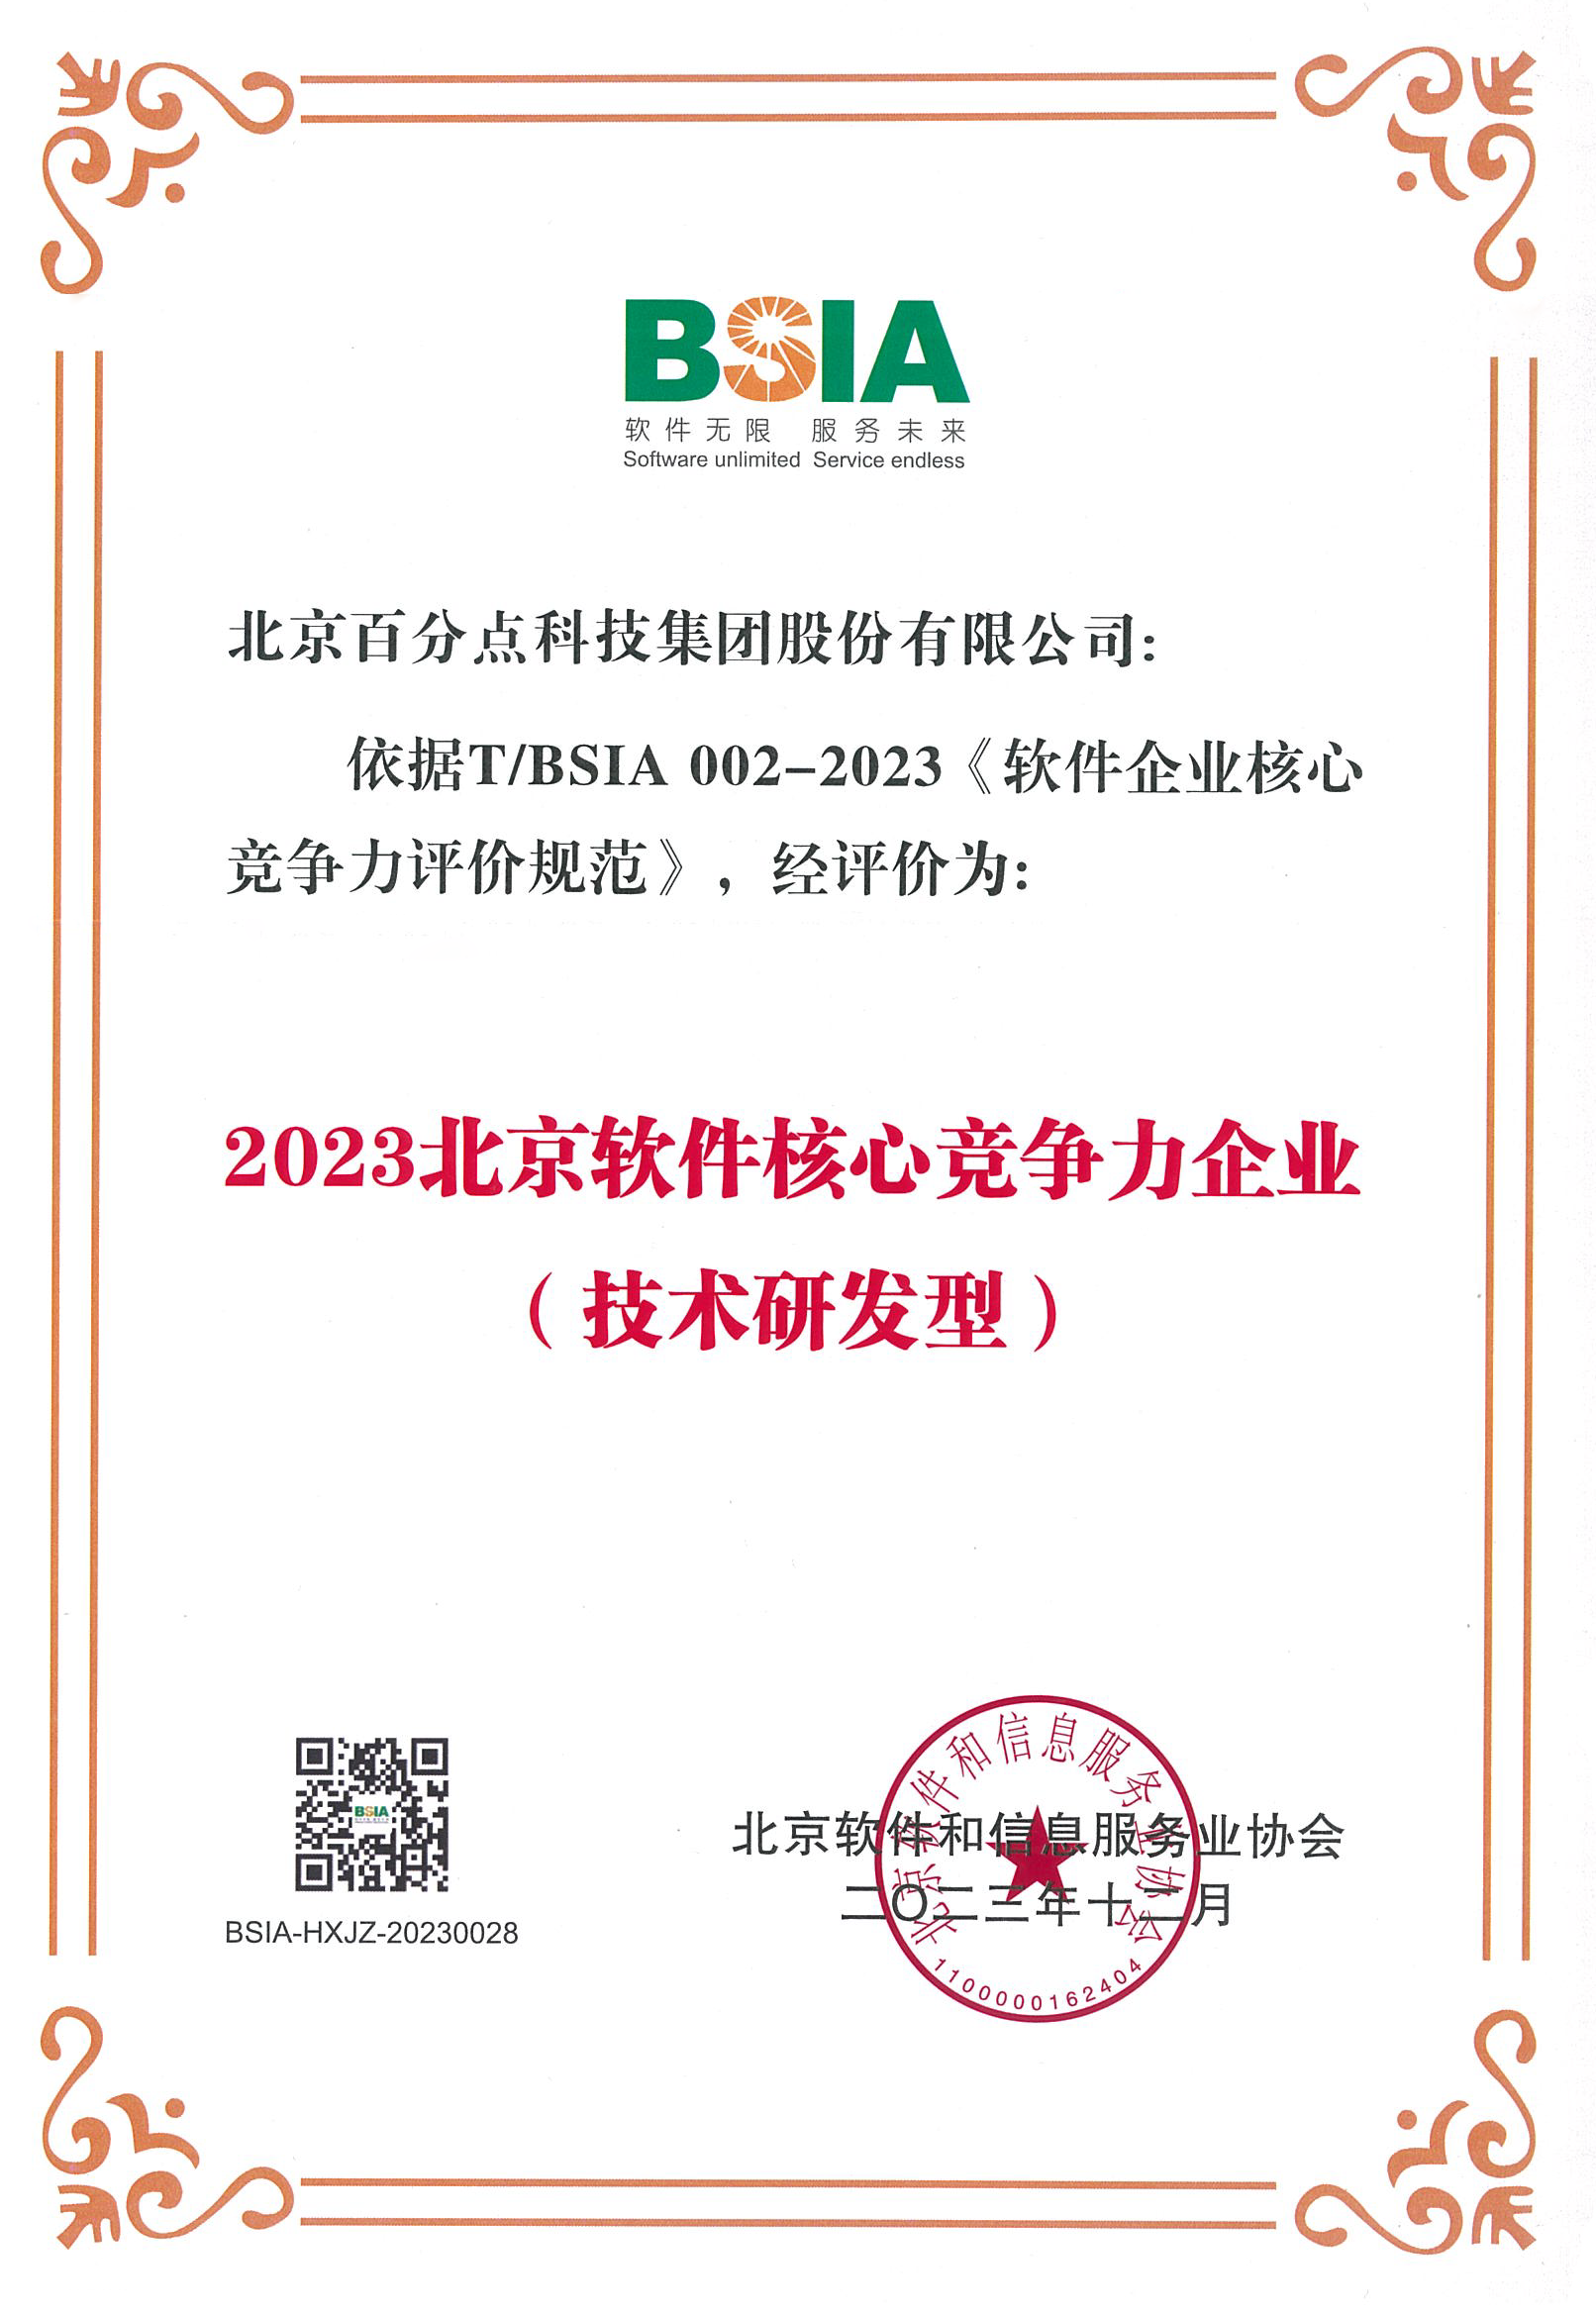 2023.12 2023北京软件核心竞争力企业（技术研发型）.png